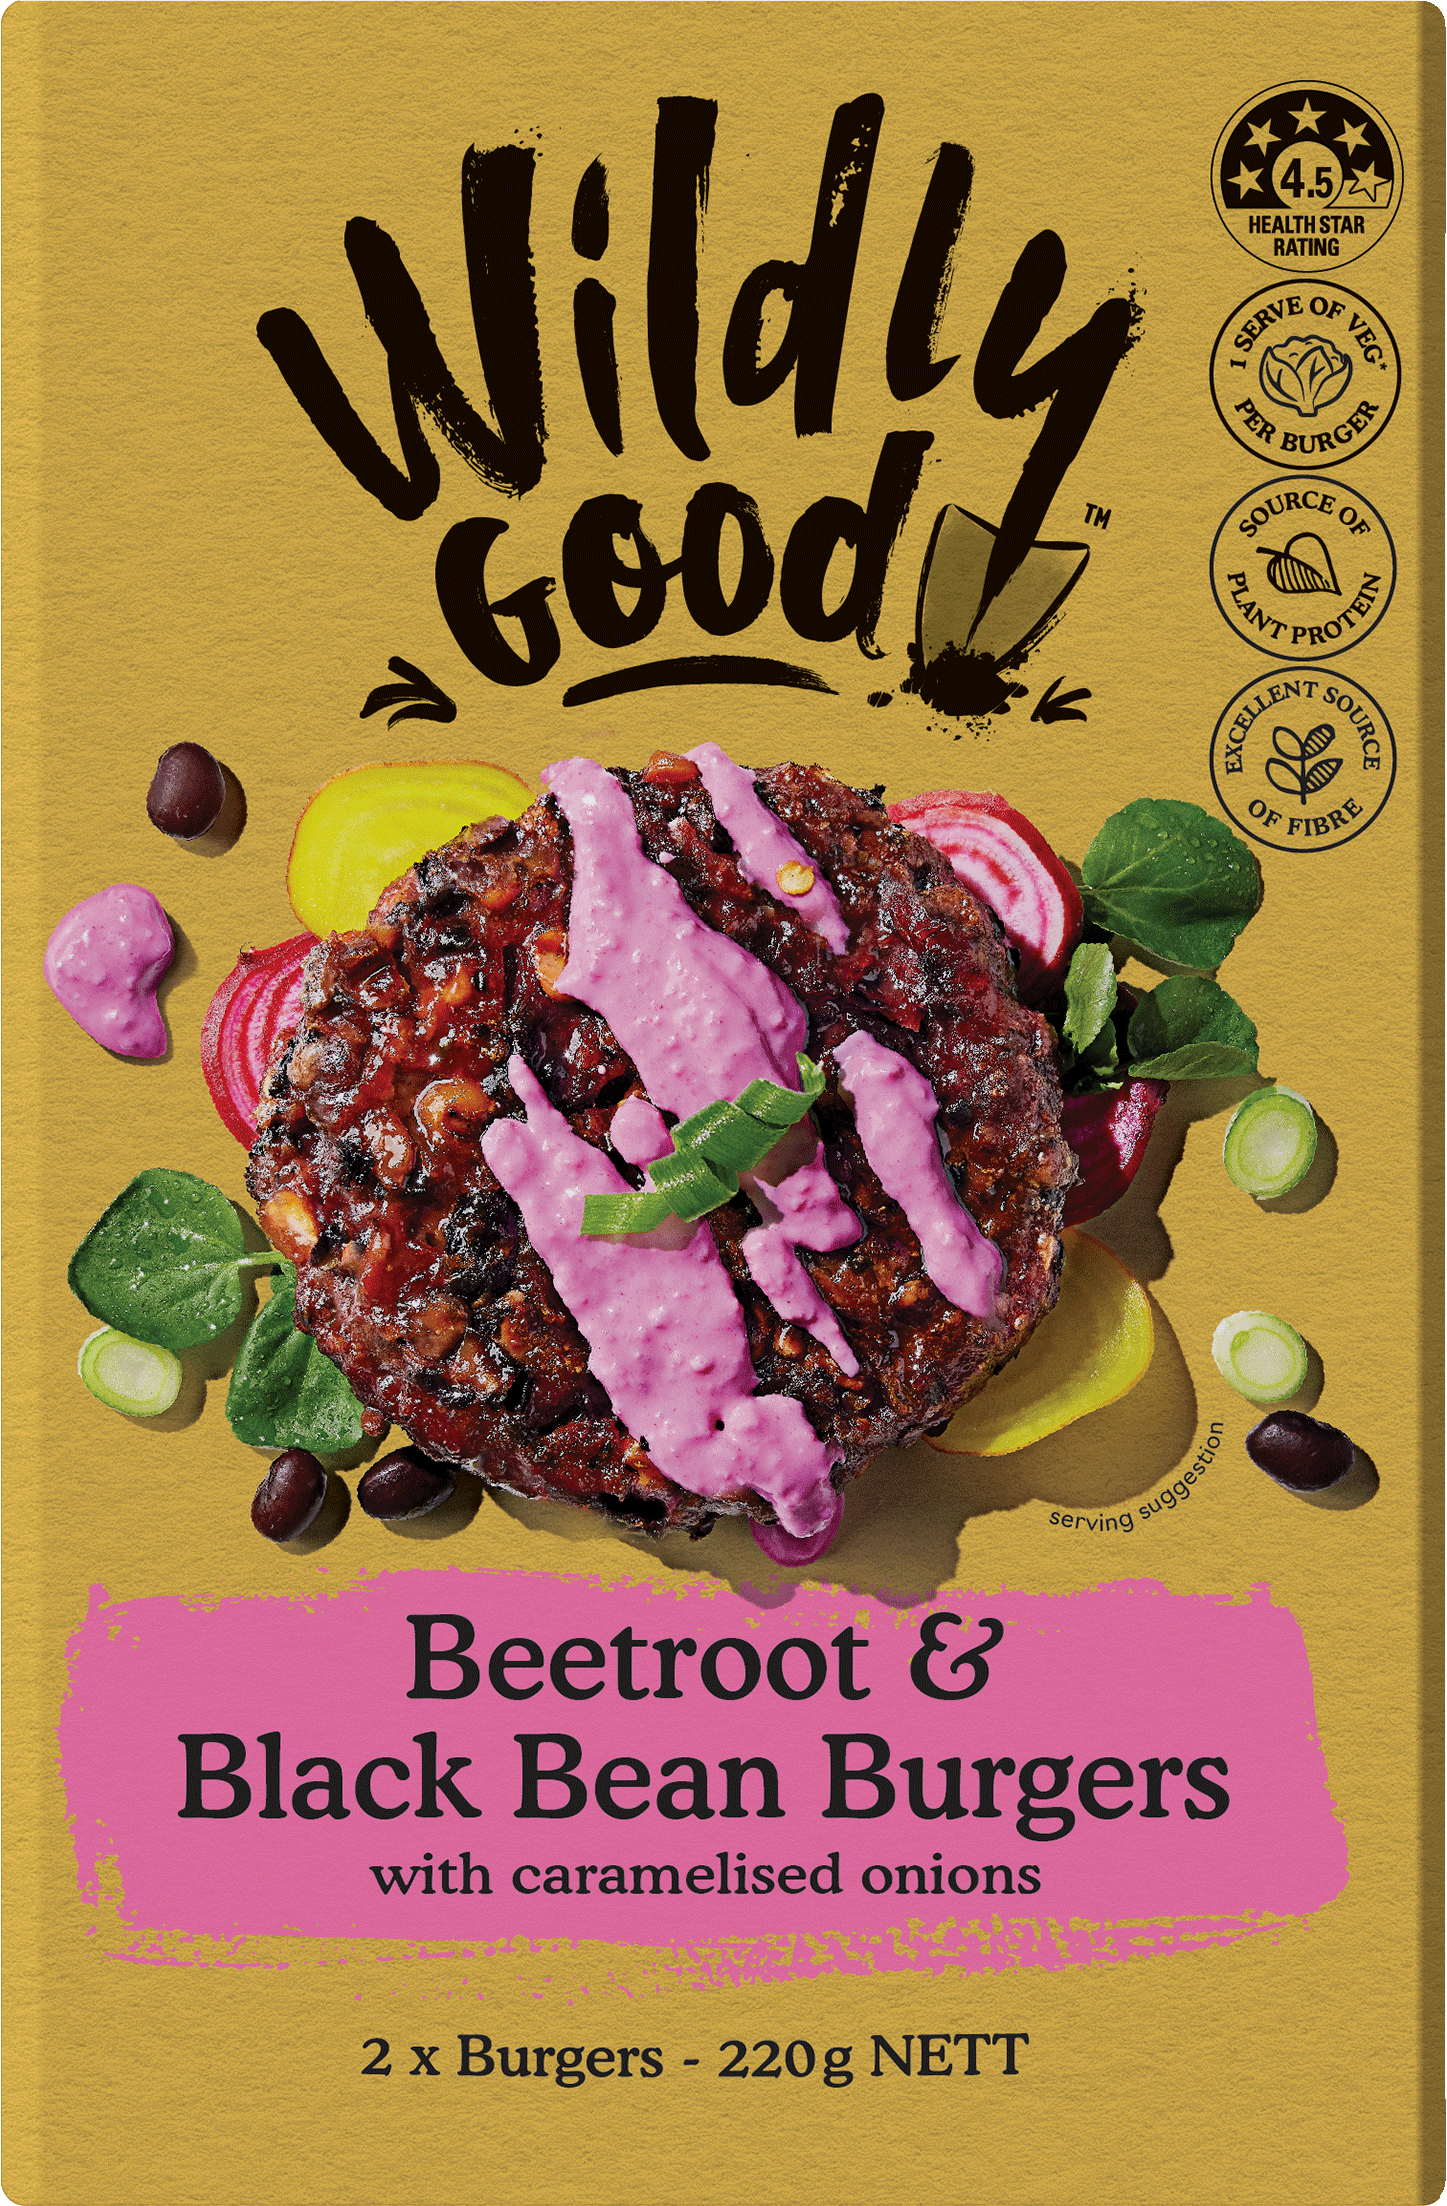 Wildly Good Beetroot Black Bean Burgers